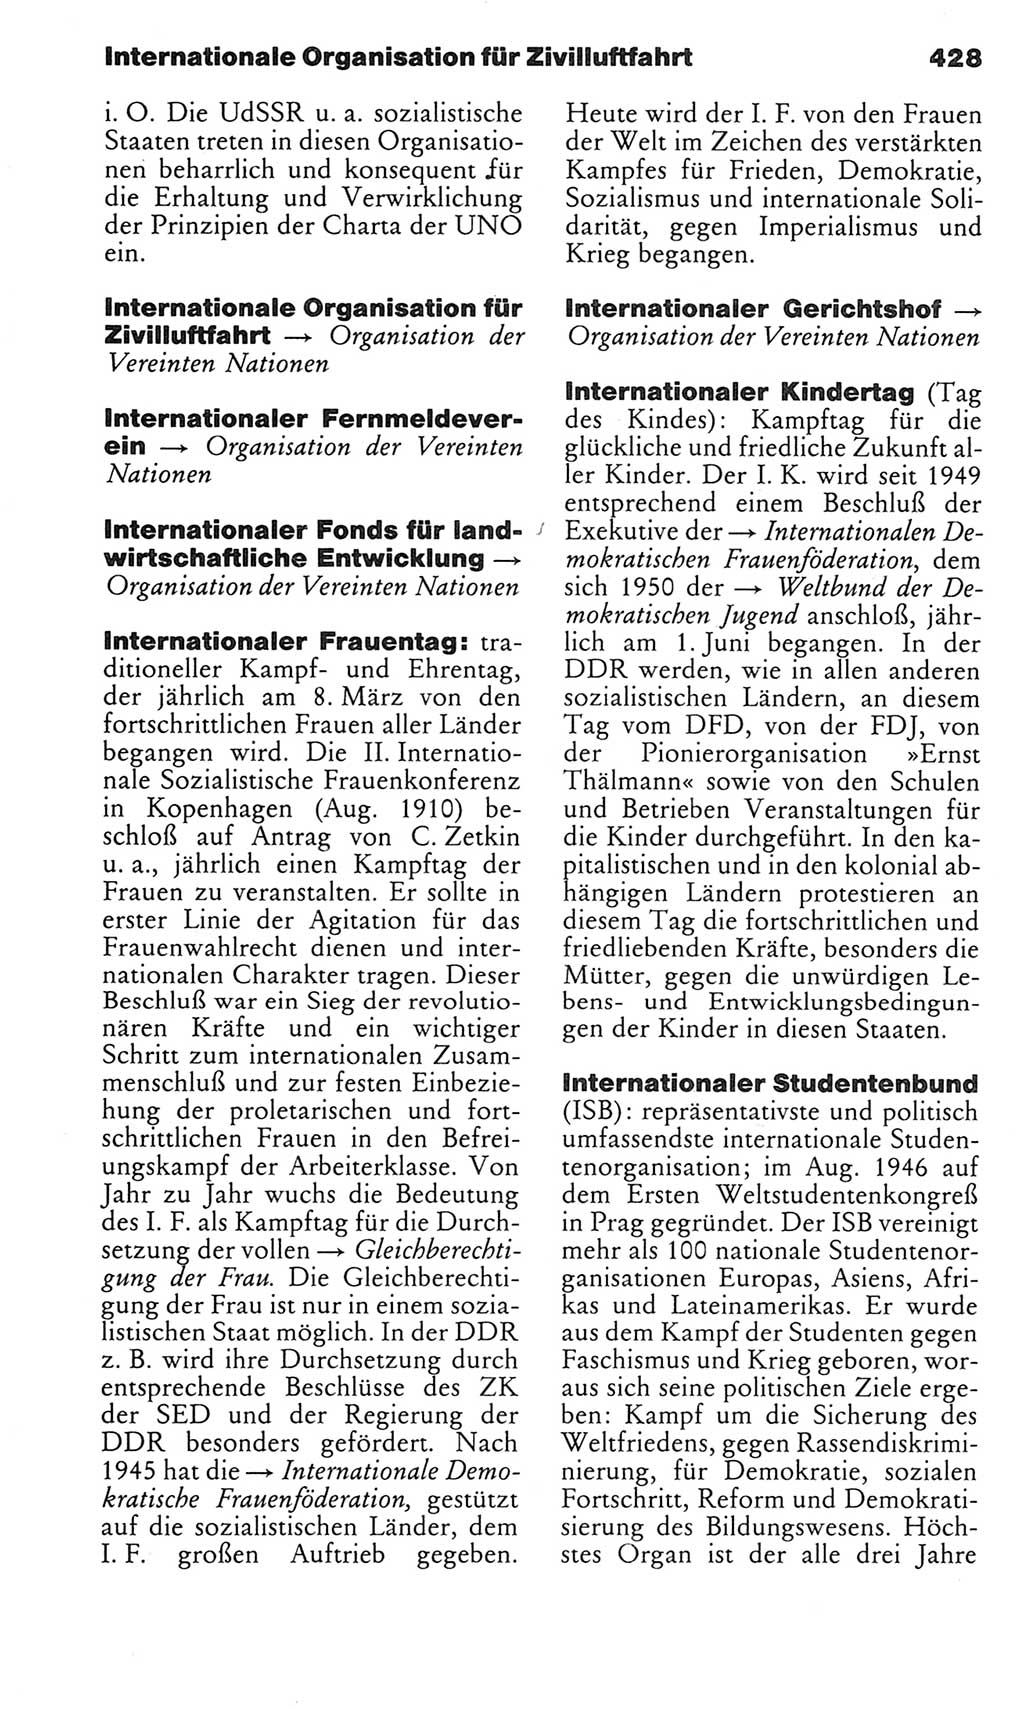 Kleines politisches Wörterbuch [Deutsche Demokratische Republik (DDR)] 1983, Seite 428 (Kl. pol. Wb. DDR 1983, S. 428)